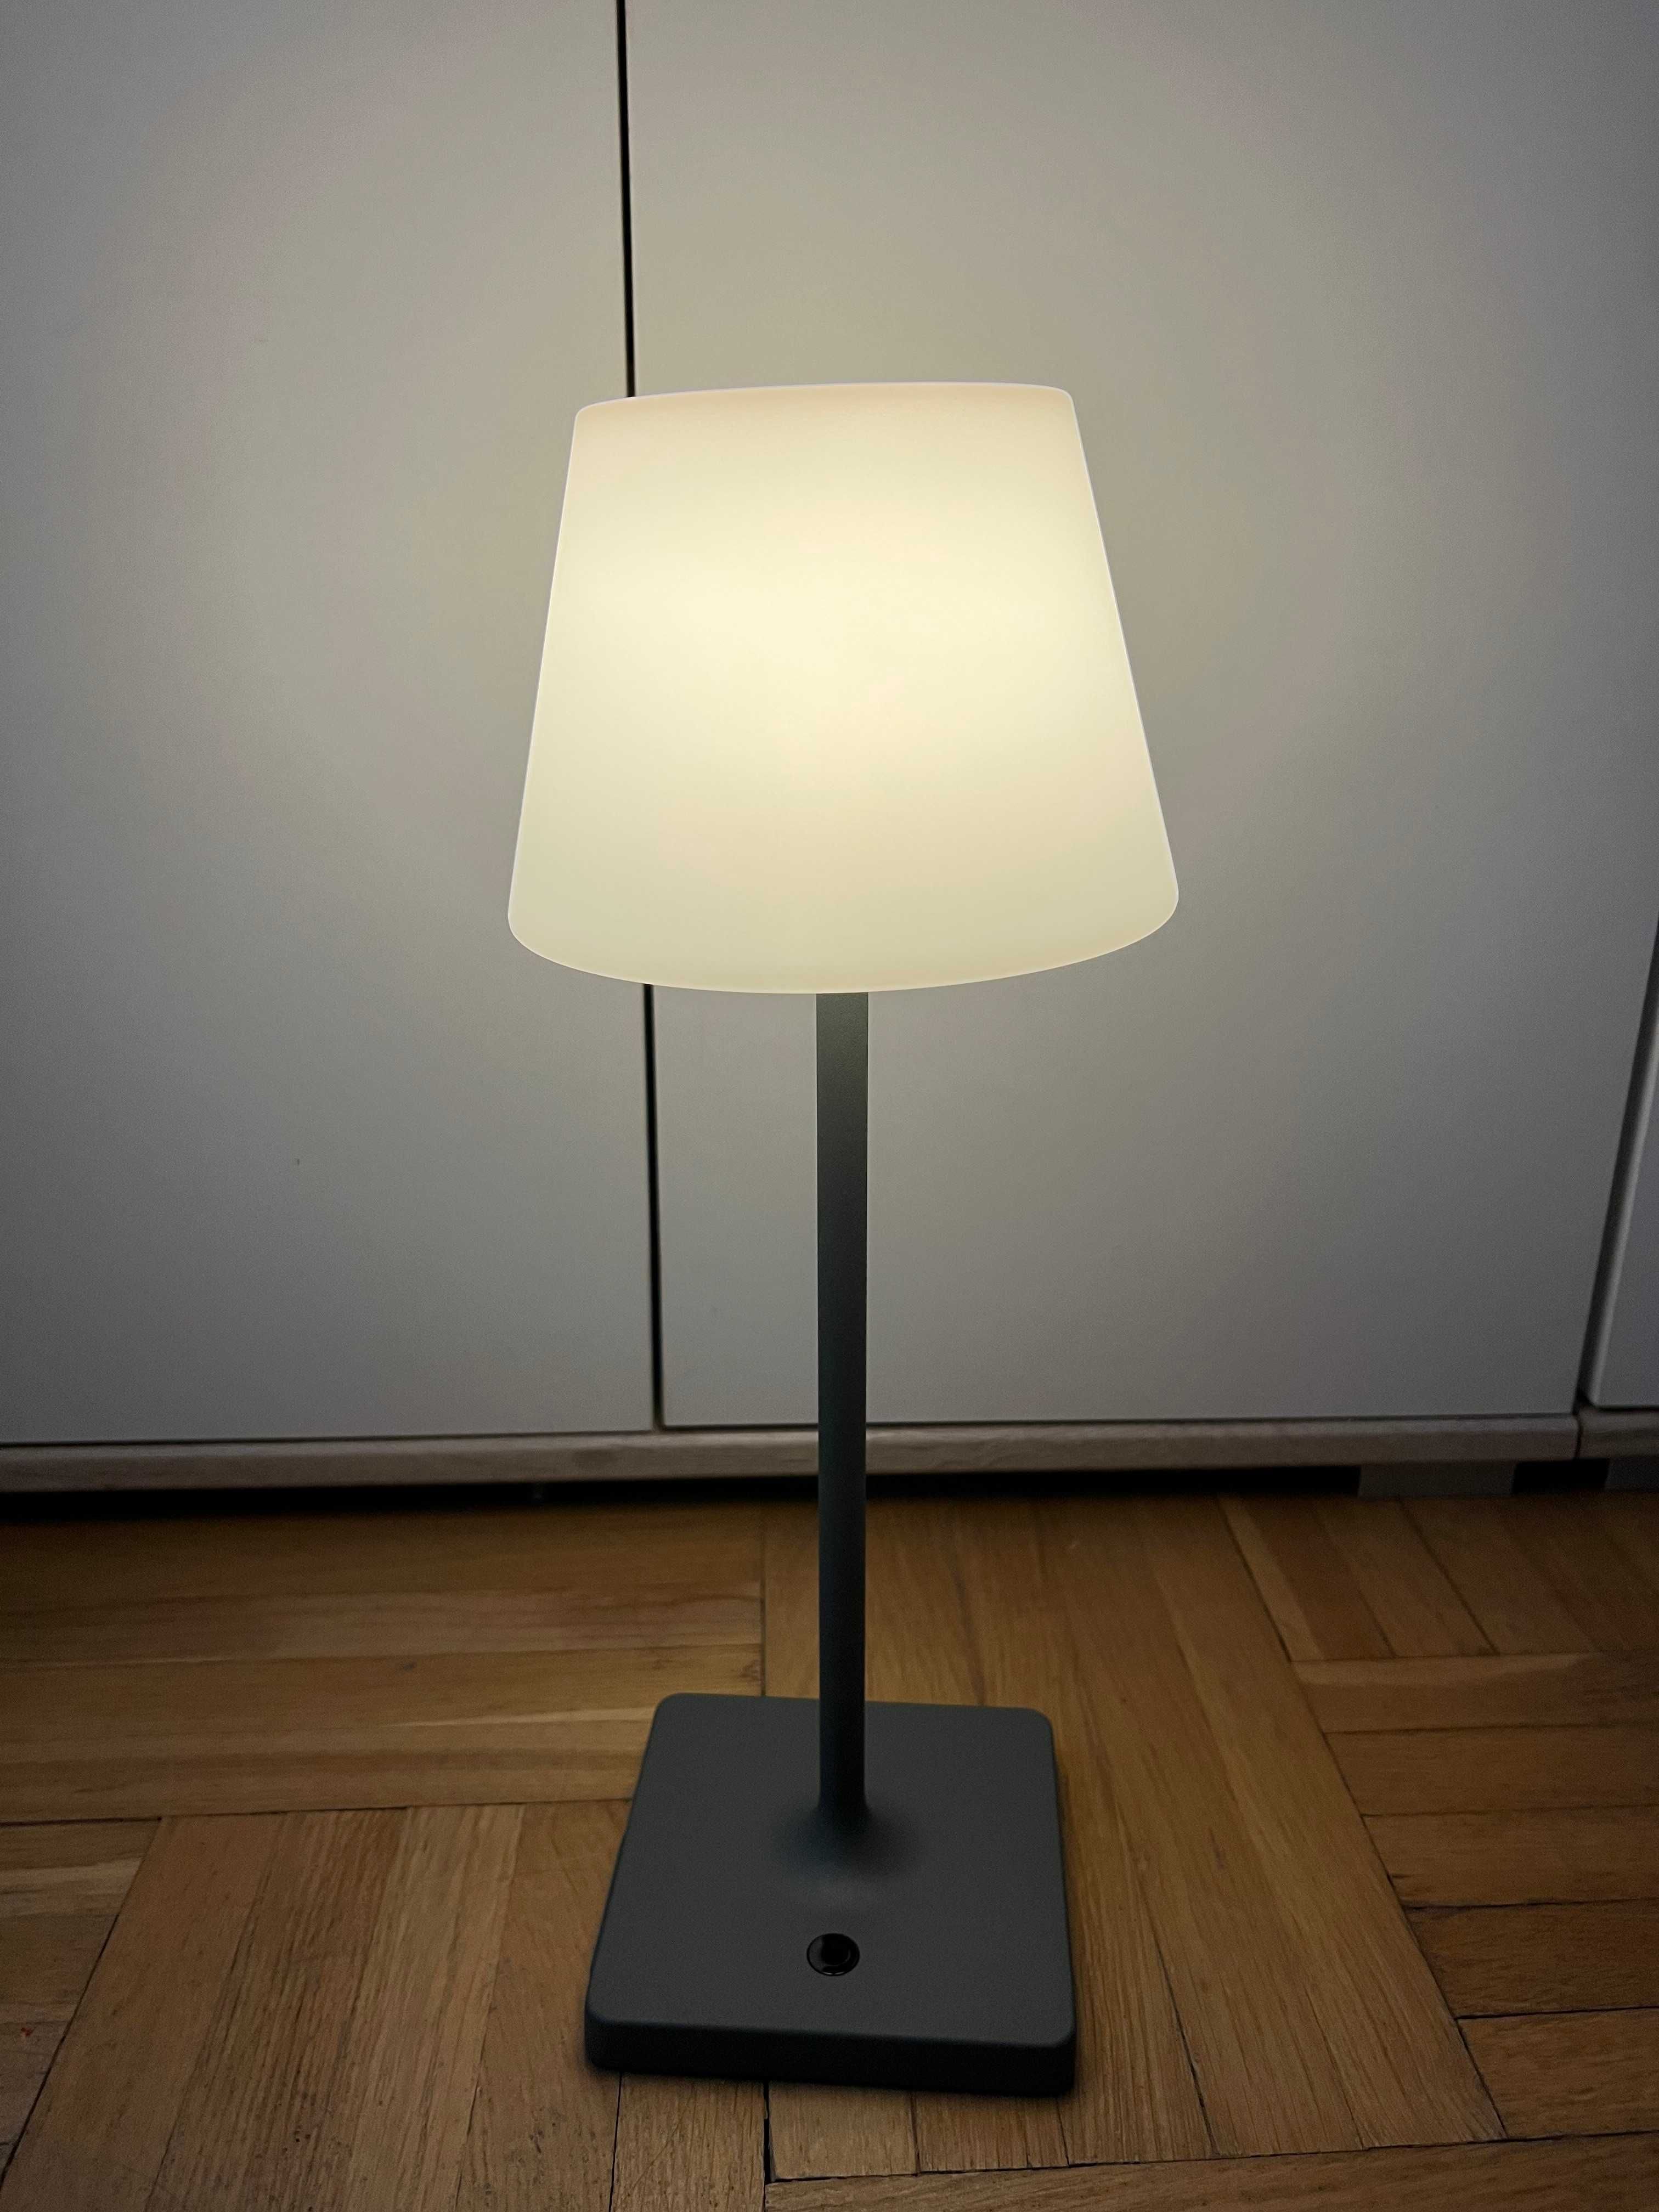 Lampka RGBW z możliwością ściemniania